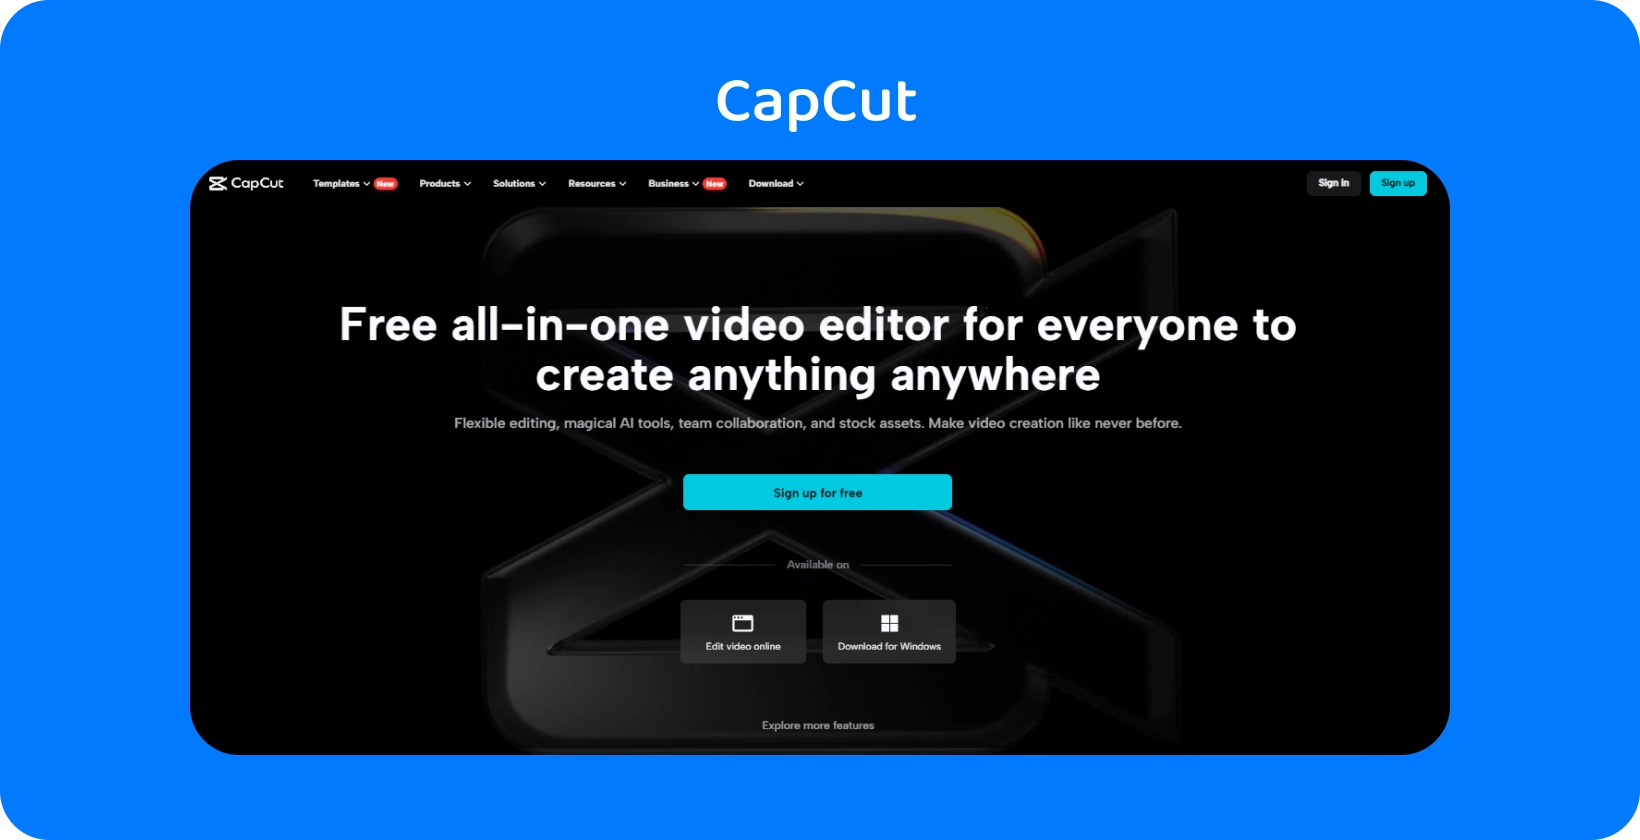 Домашняя страница CapCut, демонстрирующая бесплатный универсальный видеоредактор для создания контента на любом устройстве с темным и элегантным дизайном.
